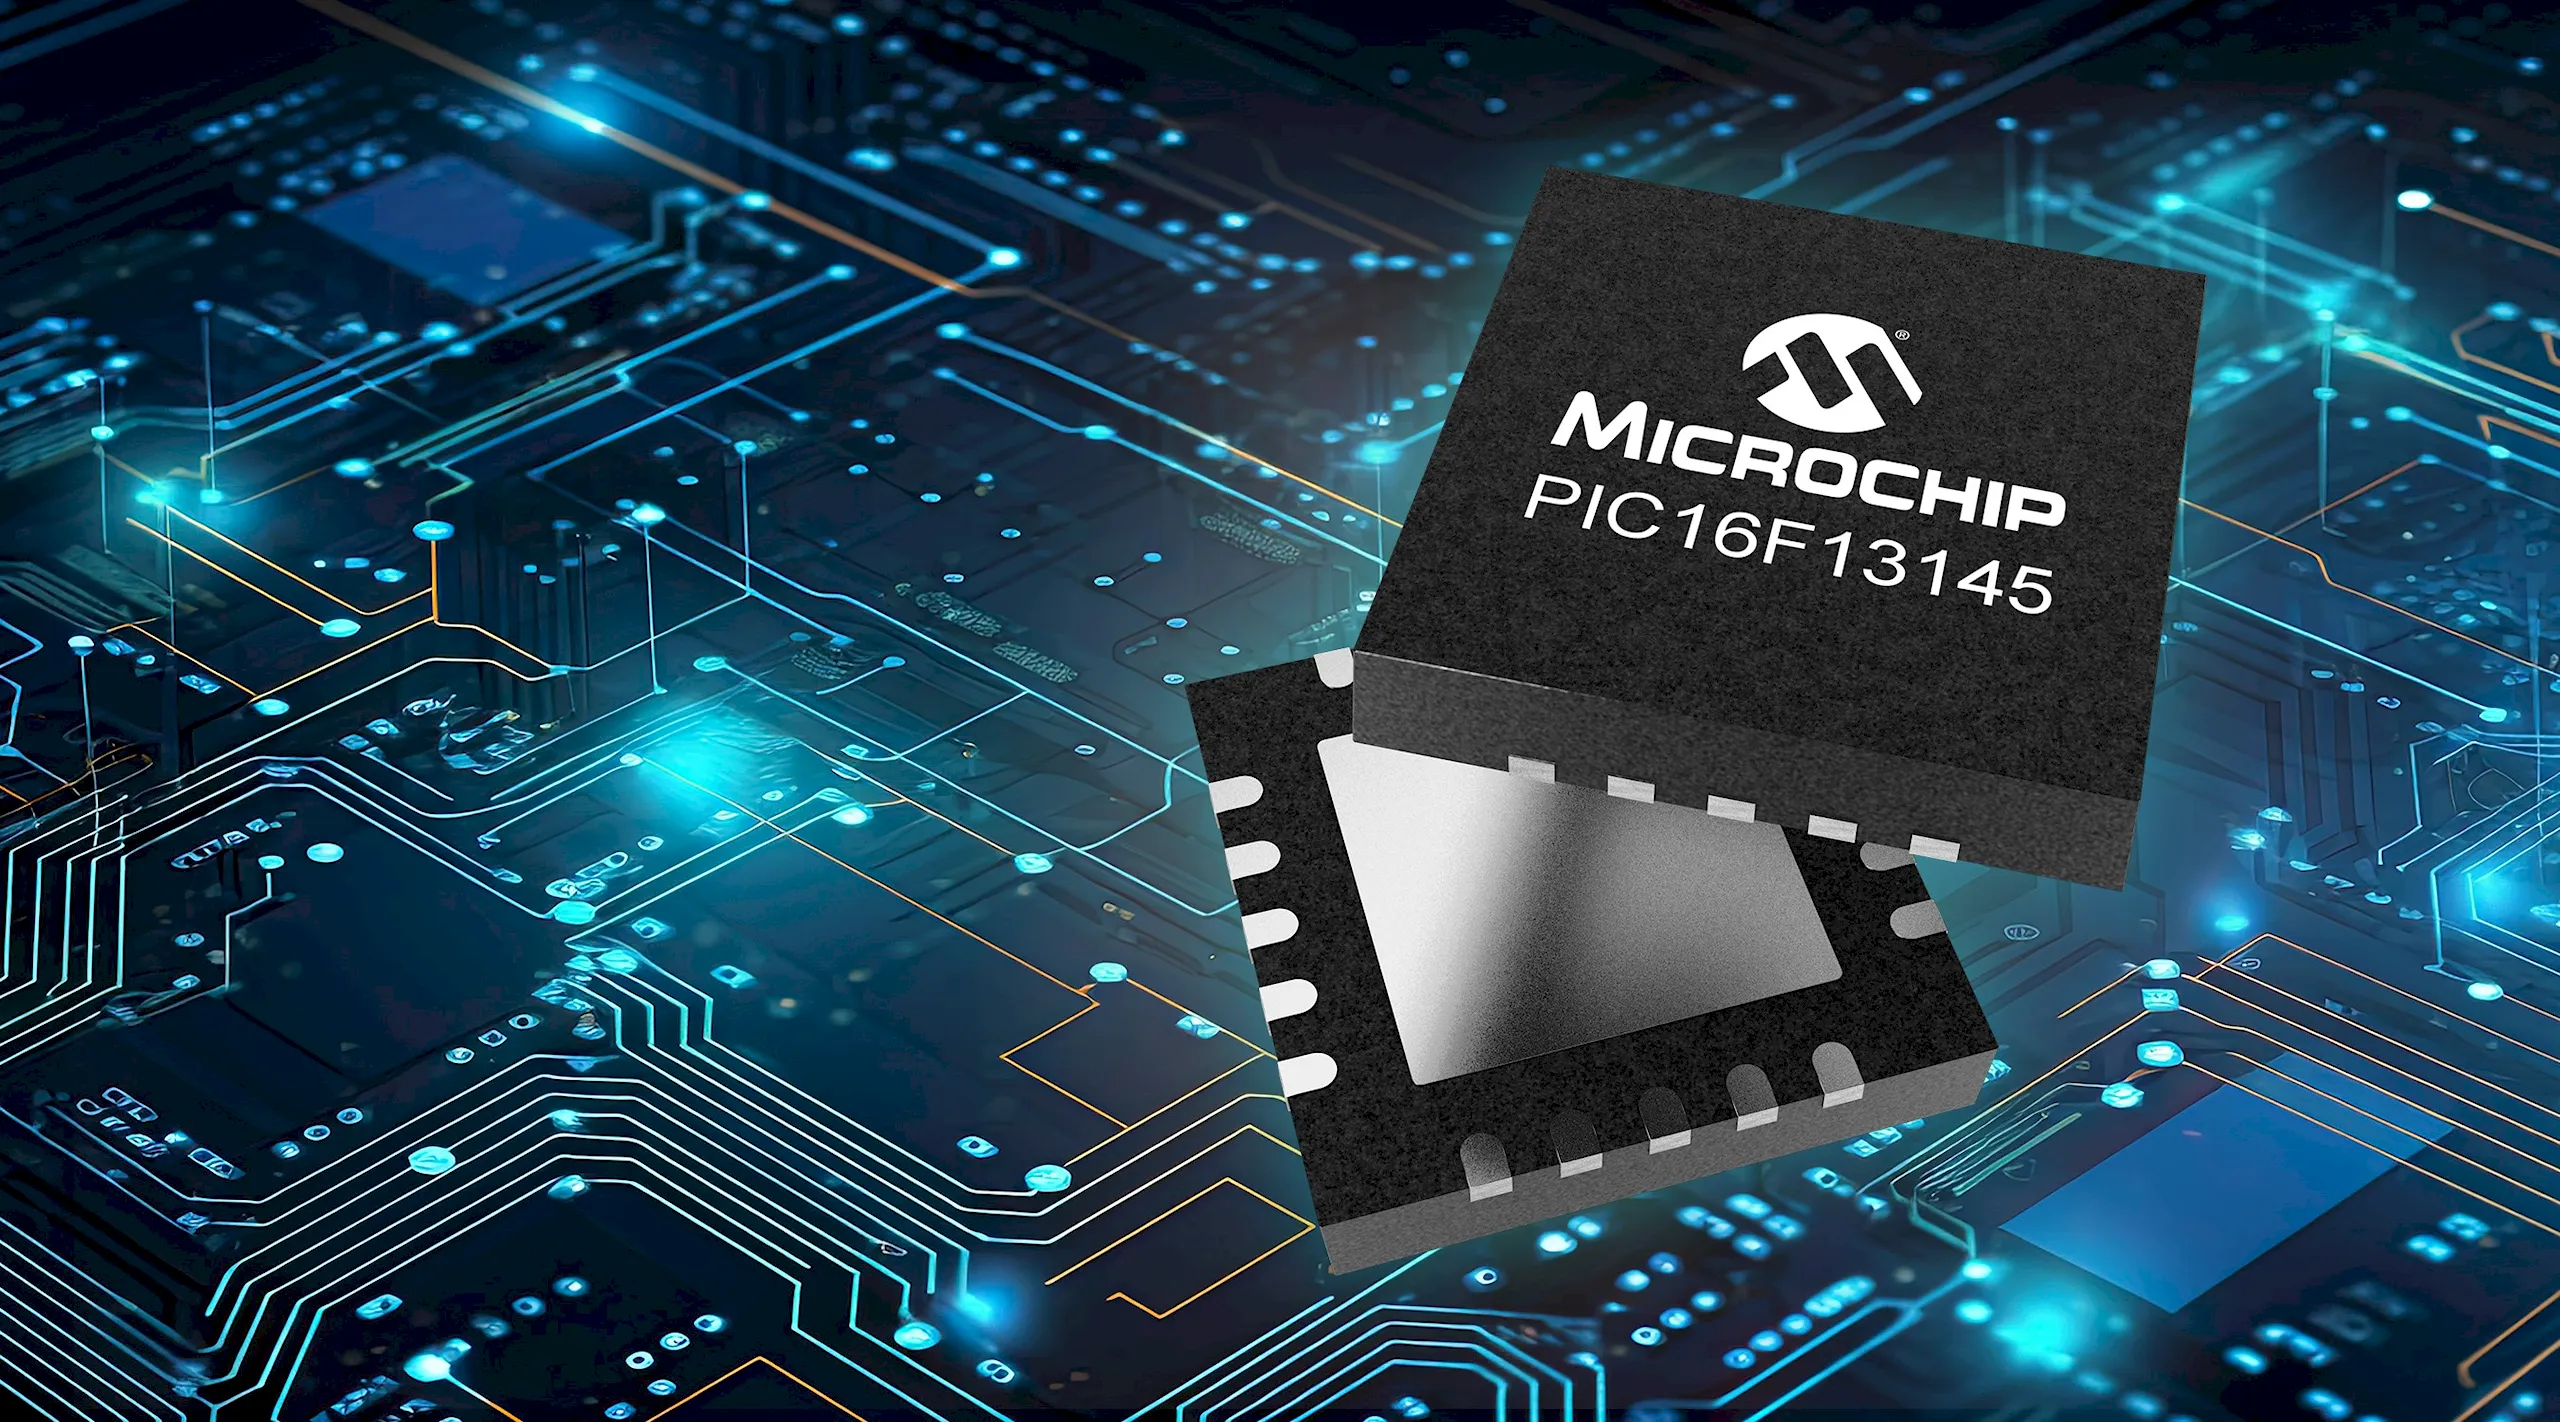 Microchip phát hành dòng sản phẩm MCU PIC16F13145 như là bước phát triển kế tiếp về logic có thể tùy chỉnh